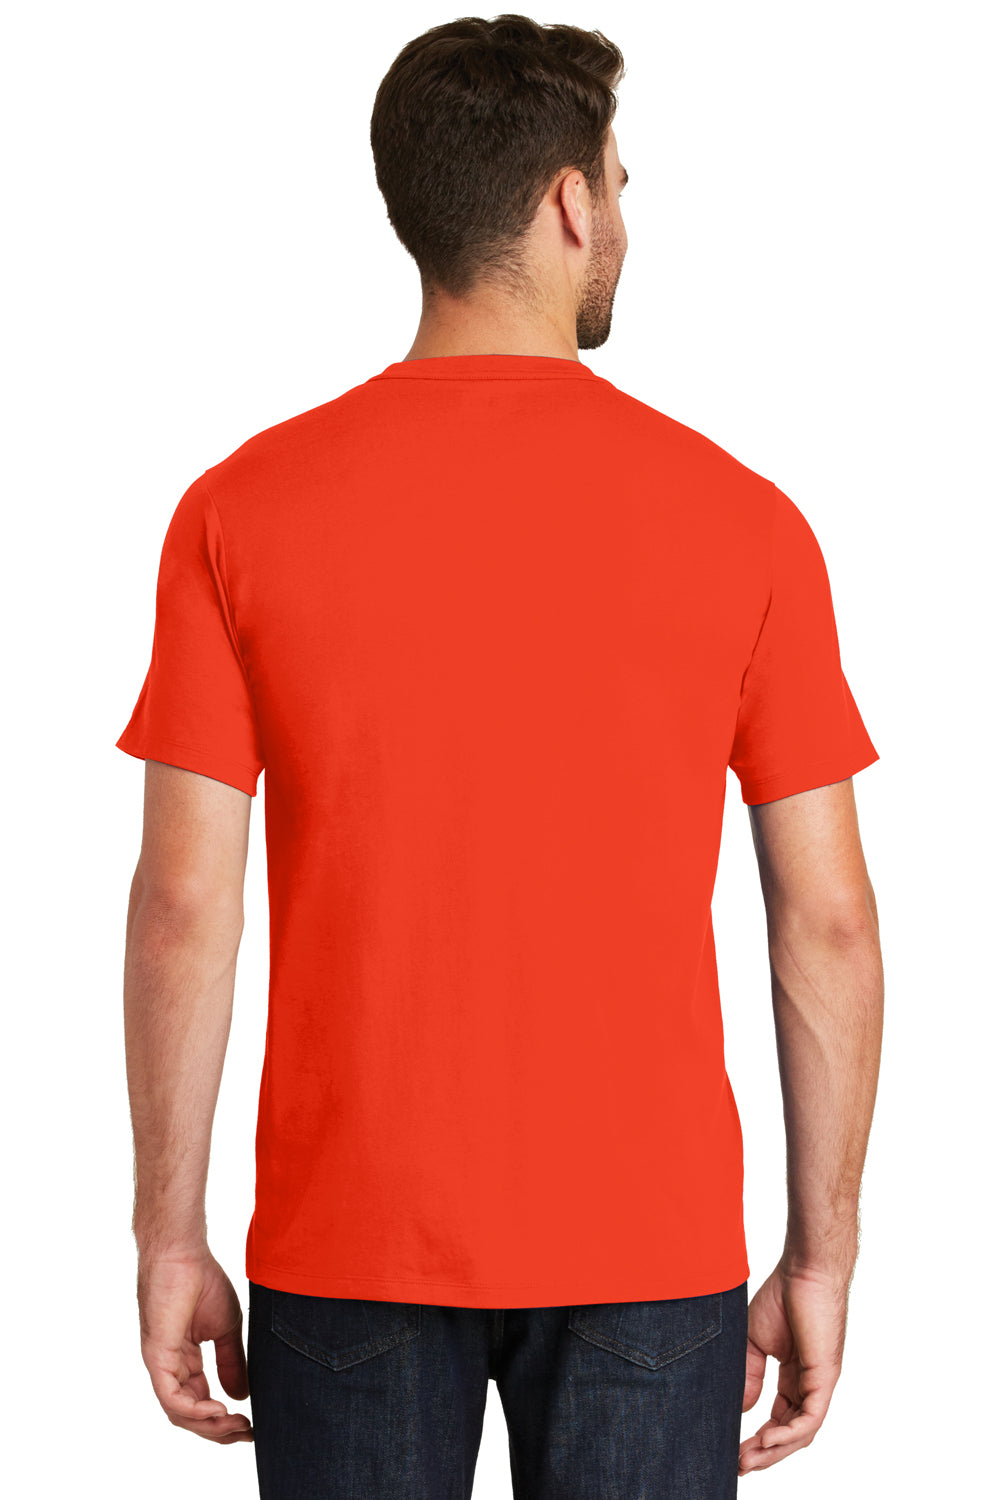 New Era NEA100 Mens Heritage Short Sleeve Crewneck T-Shirt Orange Back